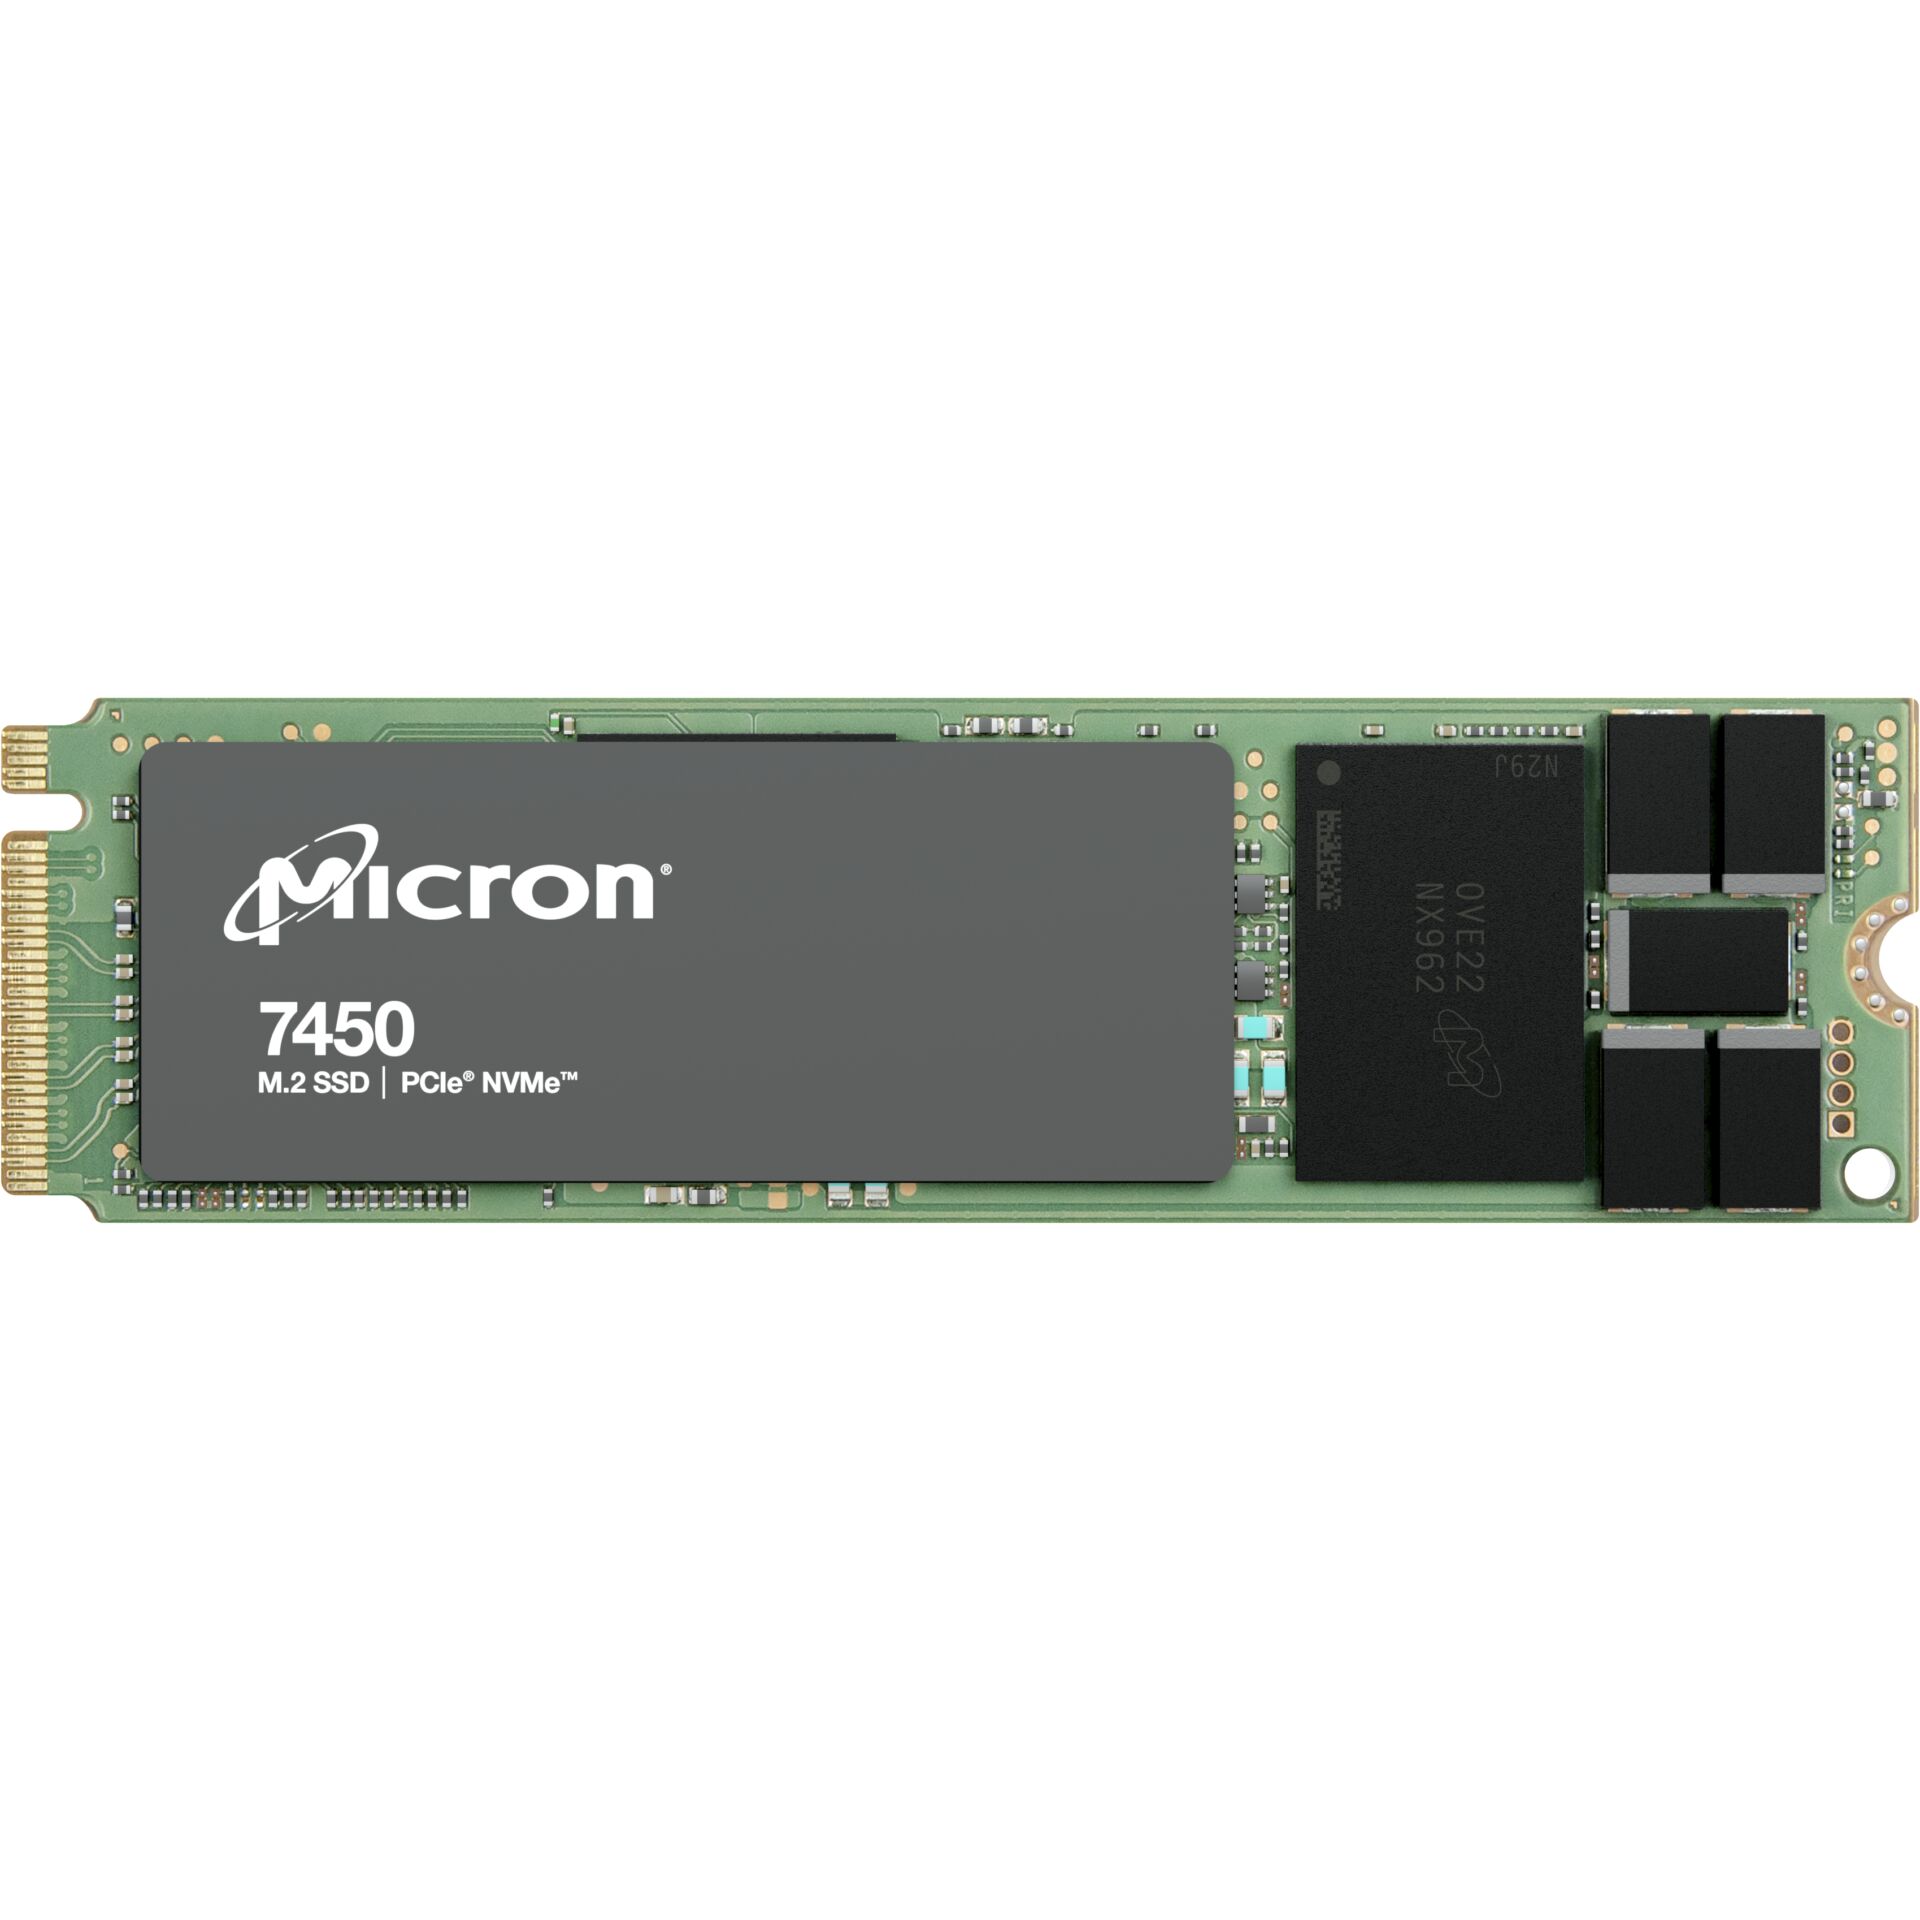 480 GB SSD Micron 7450 PRO - 1DWPD Read Intensive, M.2/M-Key (PCIe 4.0 x4), lesen: 5000MB/s, schreiben: 700MB/s